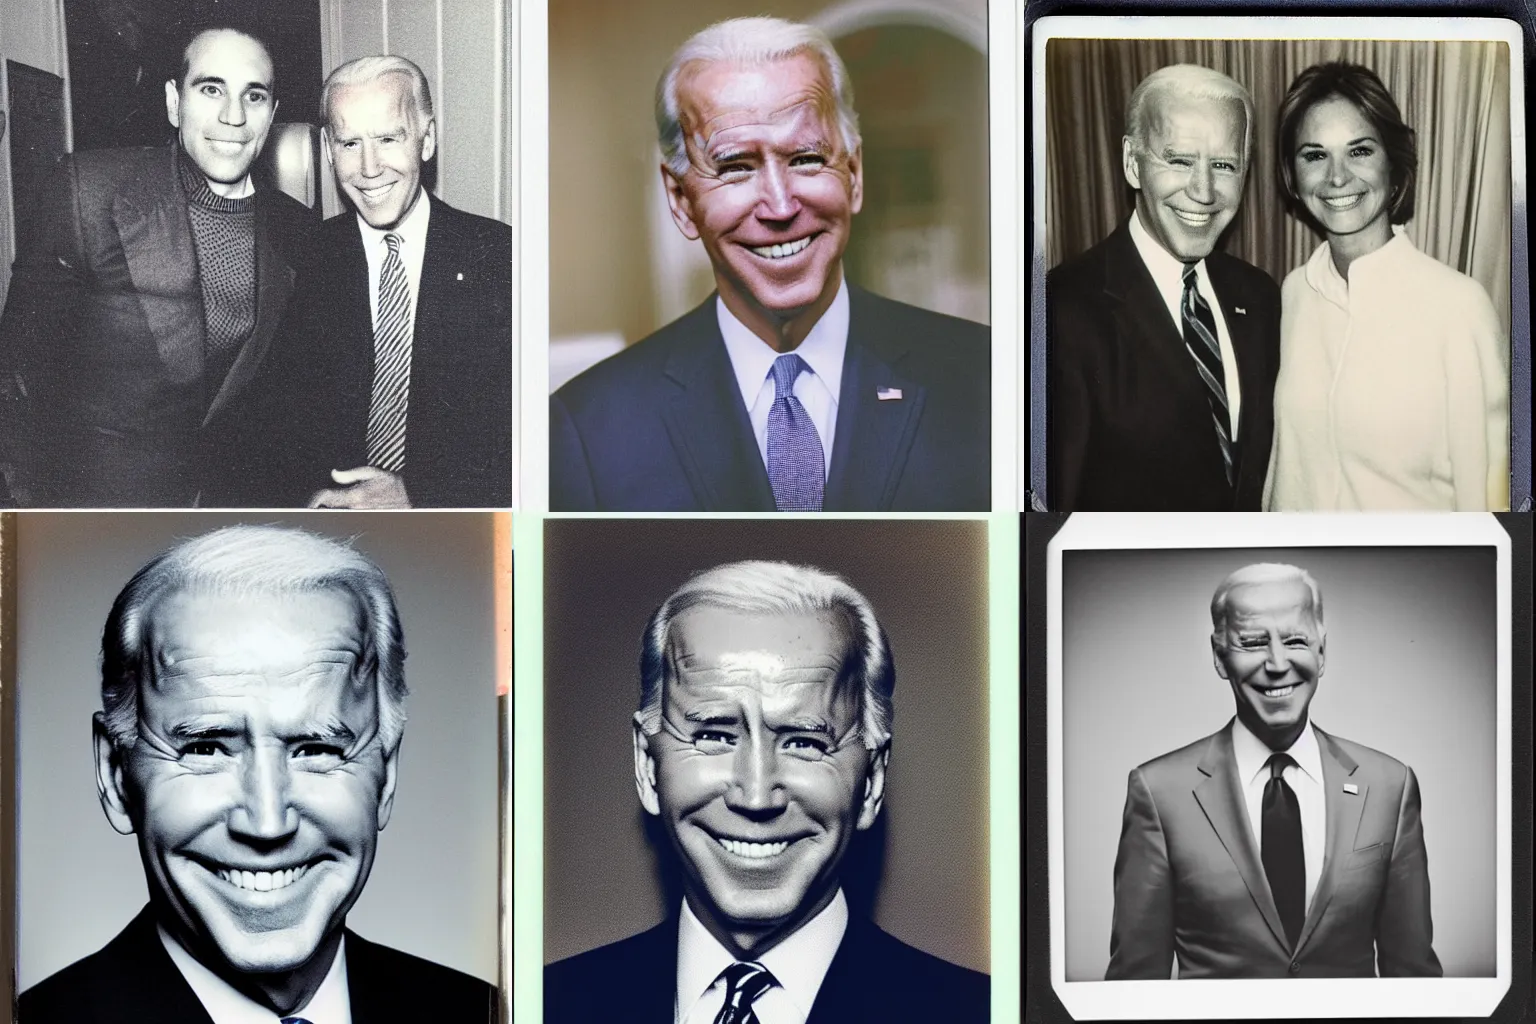 Prompt: Polaroid photo of Joe Biden